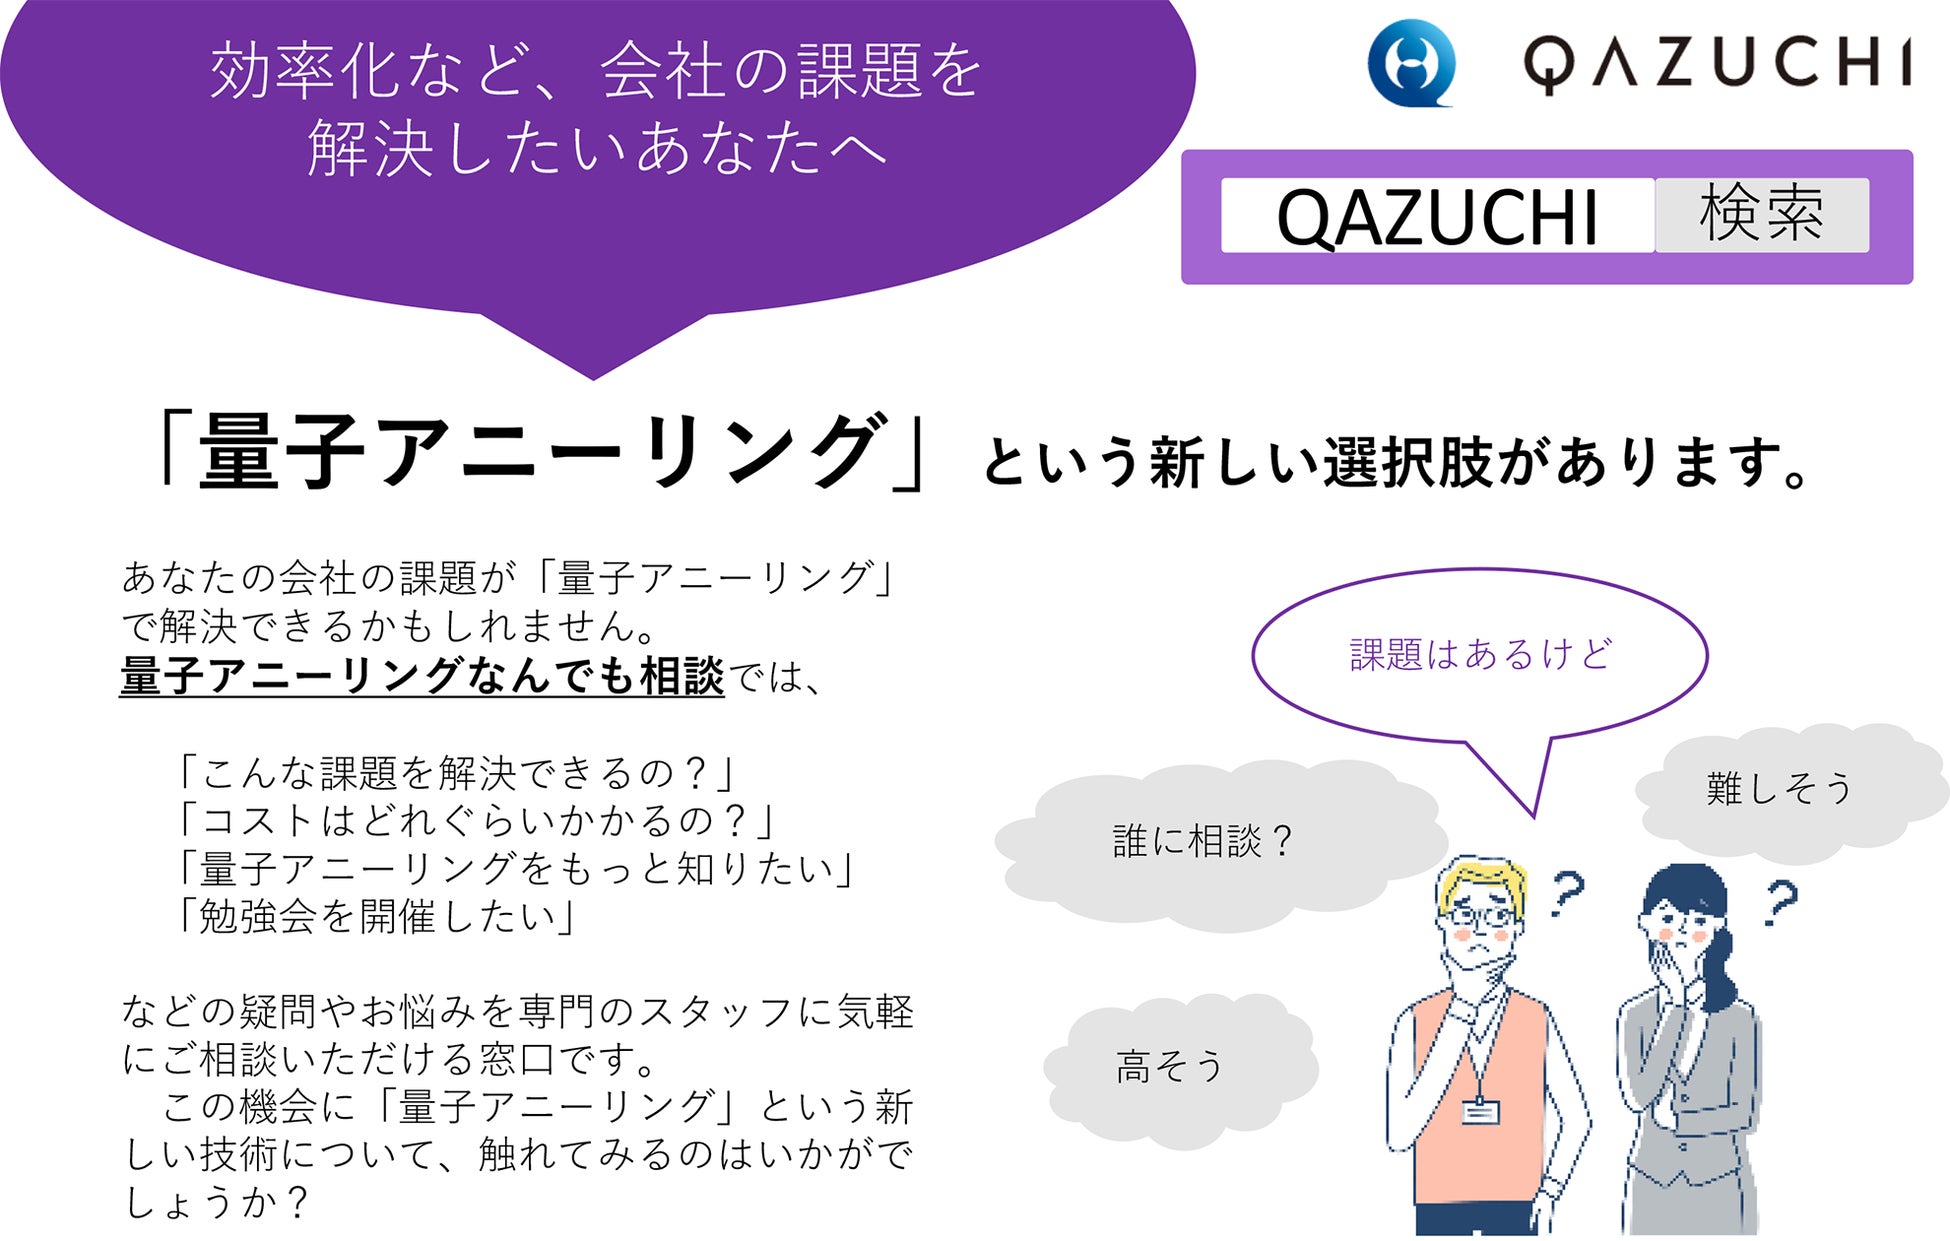 【世界初】日本の技術を世界一にしたい、量子アニーリング仕事改善マッチングサービス『QAZUCHI（カヅチ）』開始に向け全力機械が『量子アニーリングなんでも相談』を当初無料で開始のサブ画像1